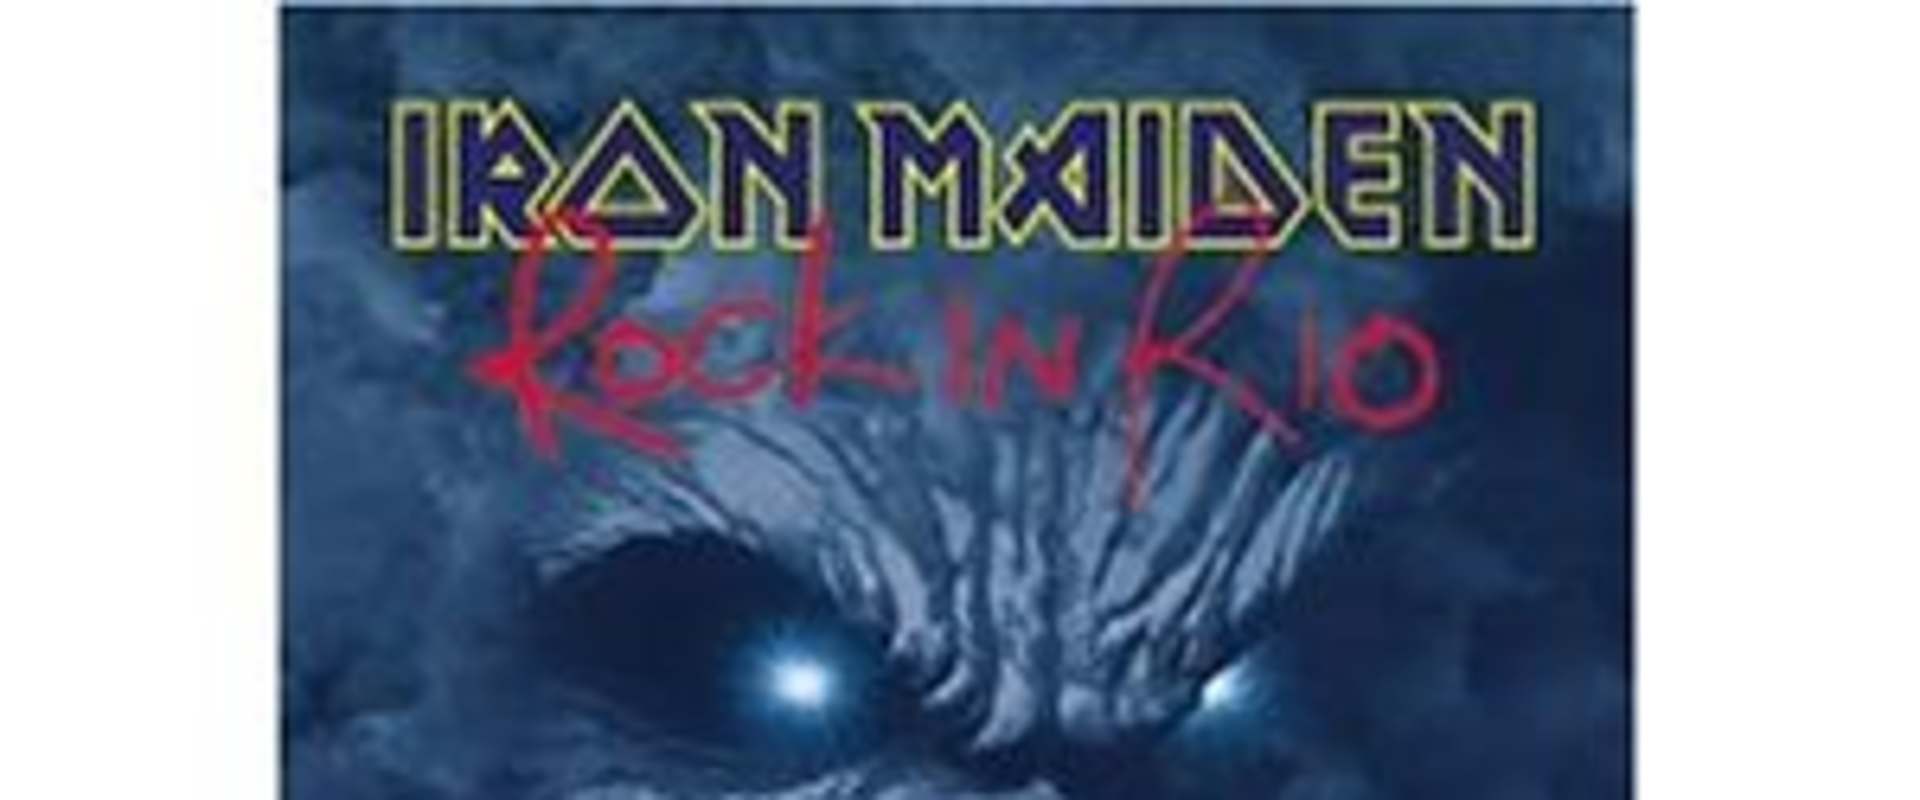 Iron Maiden: Rock In Rio 2001 background 1